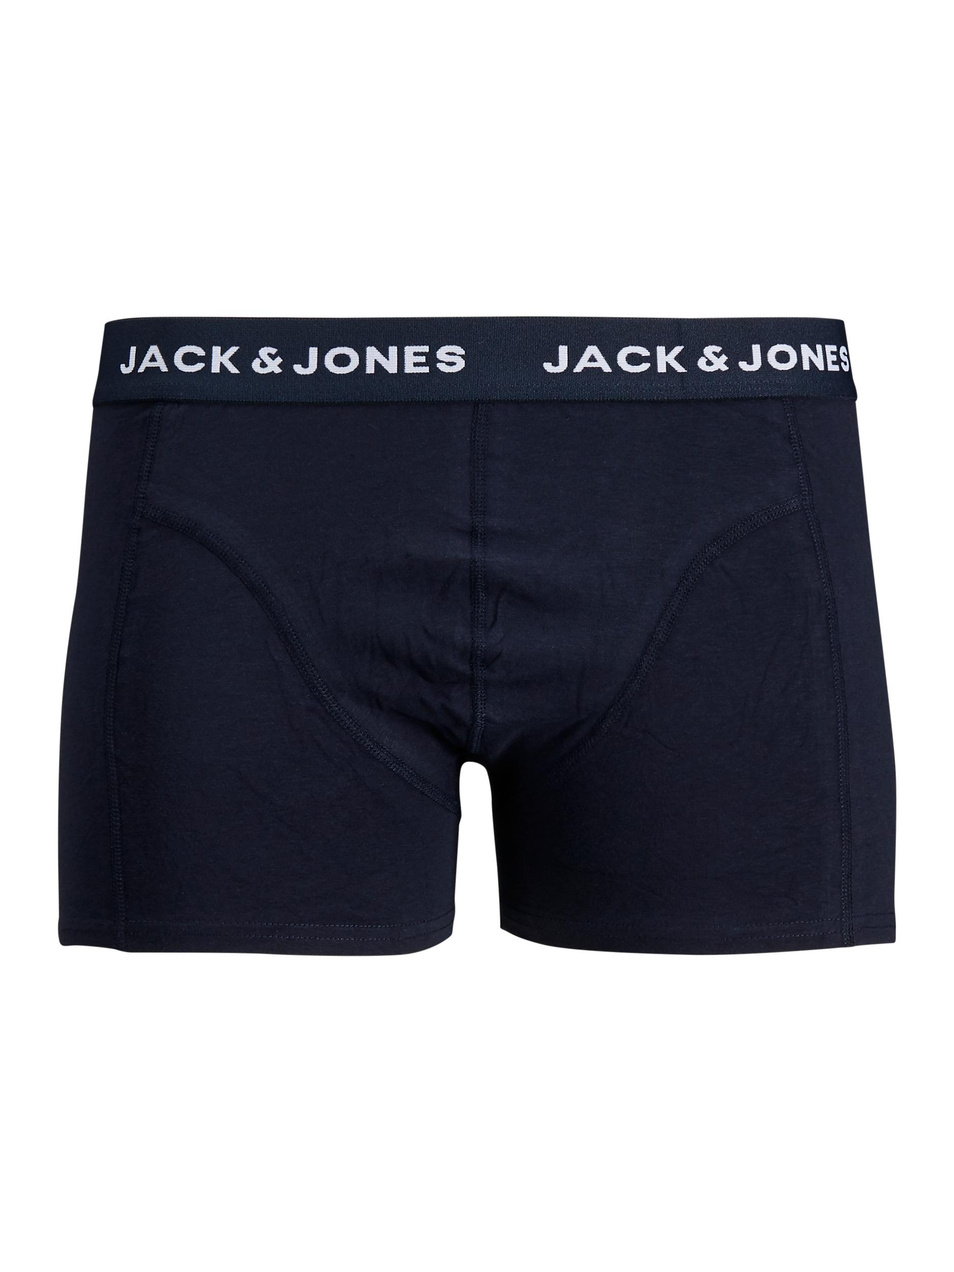 Jack & Jones Комплект трусов-боксеров в подарочной упаковке (цвет ), артикул 12179151 | Фото 4